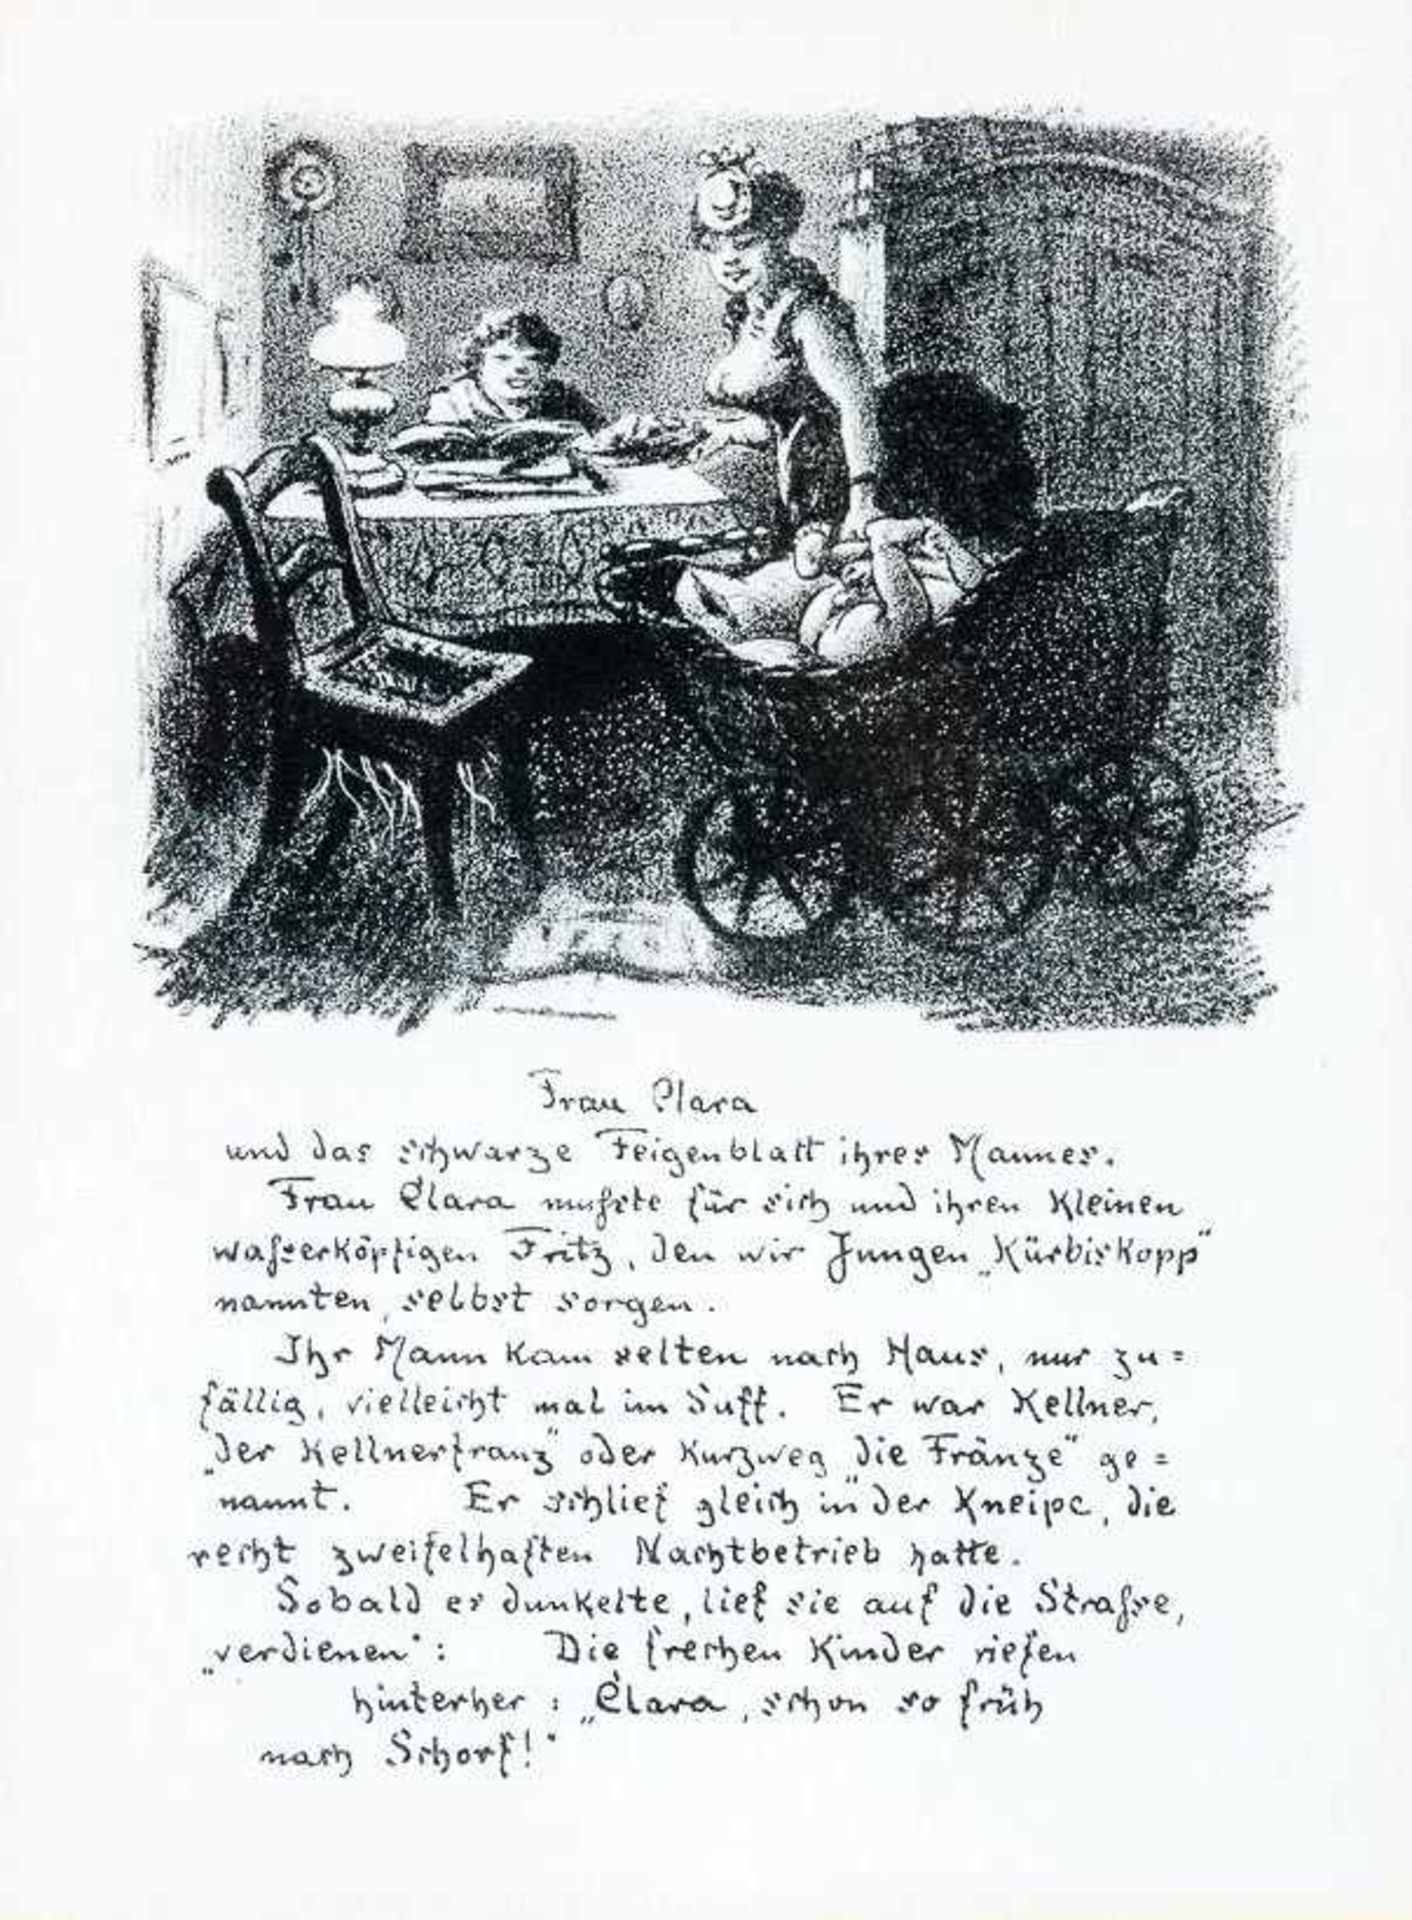 Derselbe Frau Clara. 1919. Blatt 11 des Zyklus "Zwanglose Geschichten und Bilder". Lithographie.